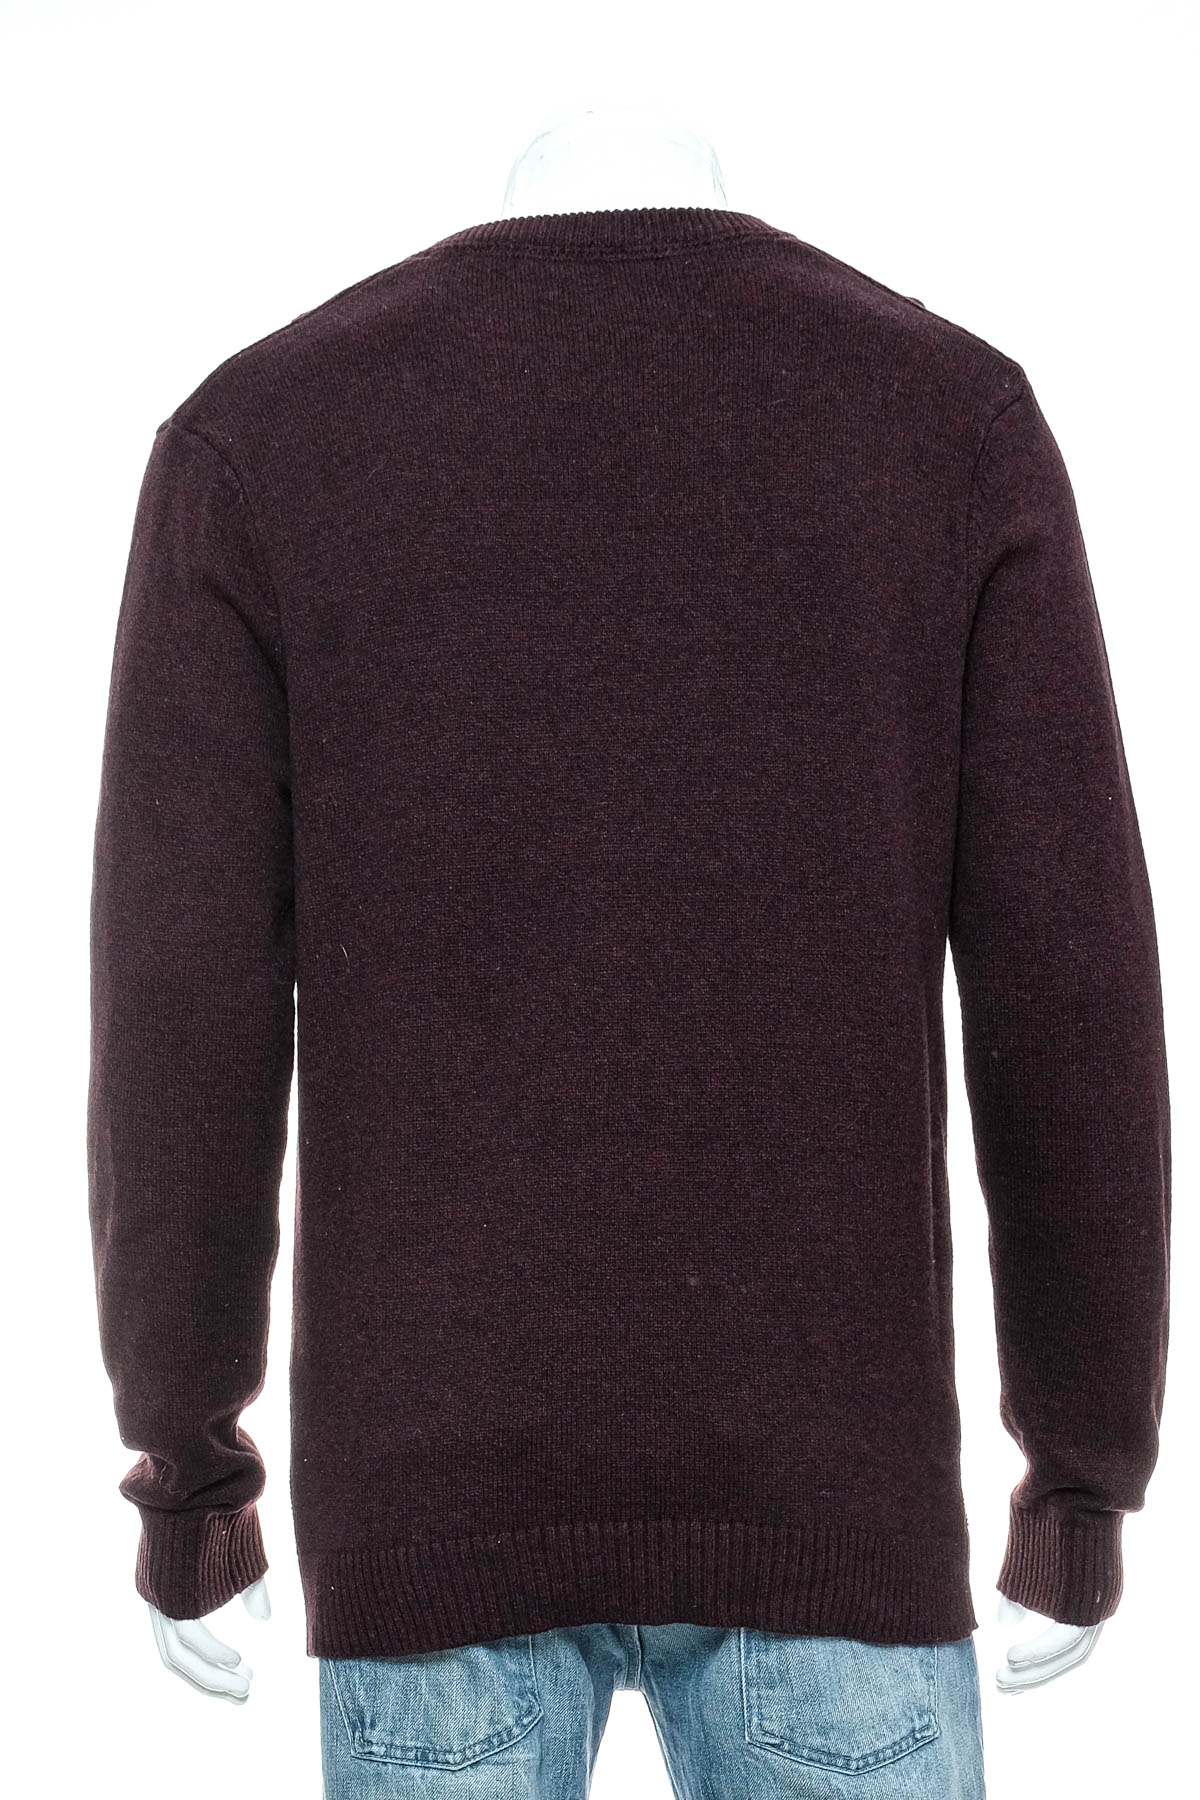 Men's sweater - CONNOR - 1